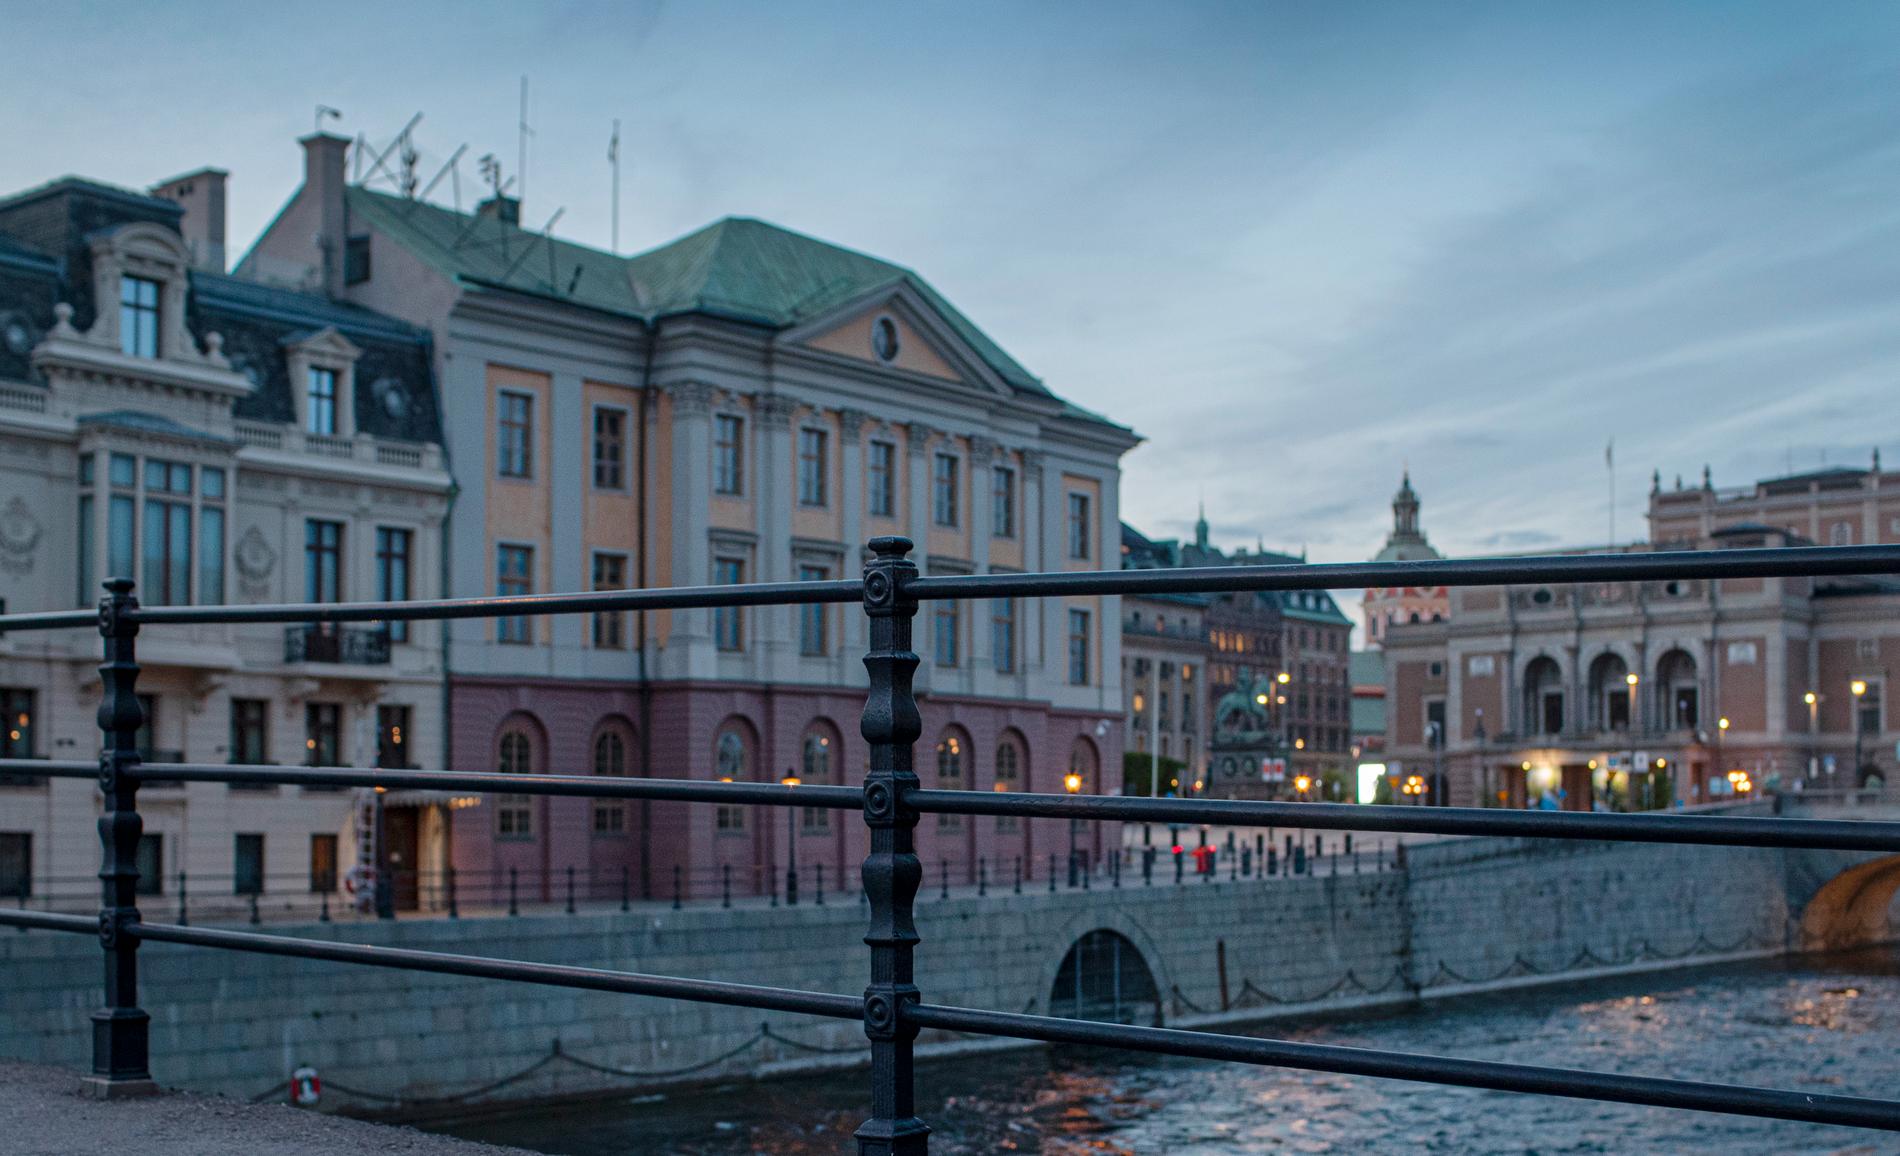 Sagerska huset till vänster i bild. Här bor de svenska statsministrarna sedan 1995. 